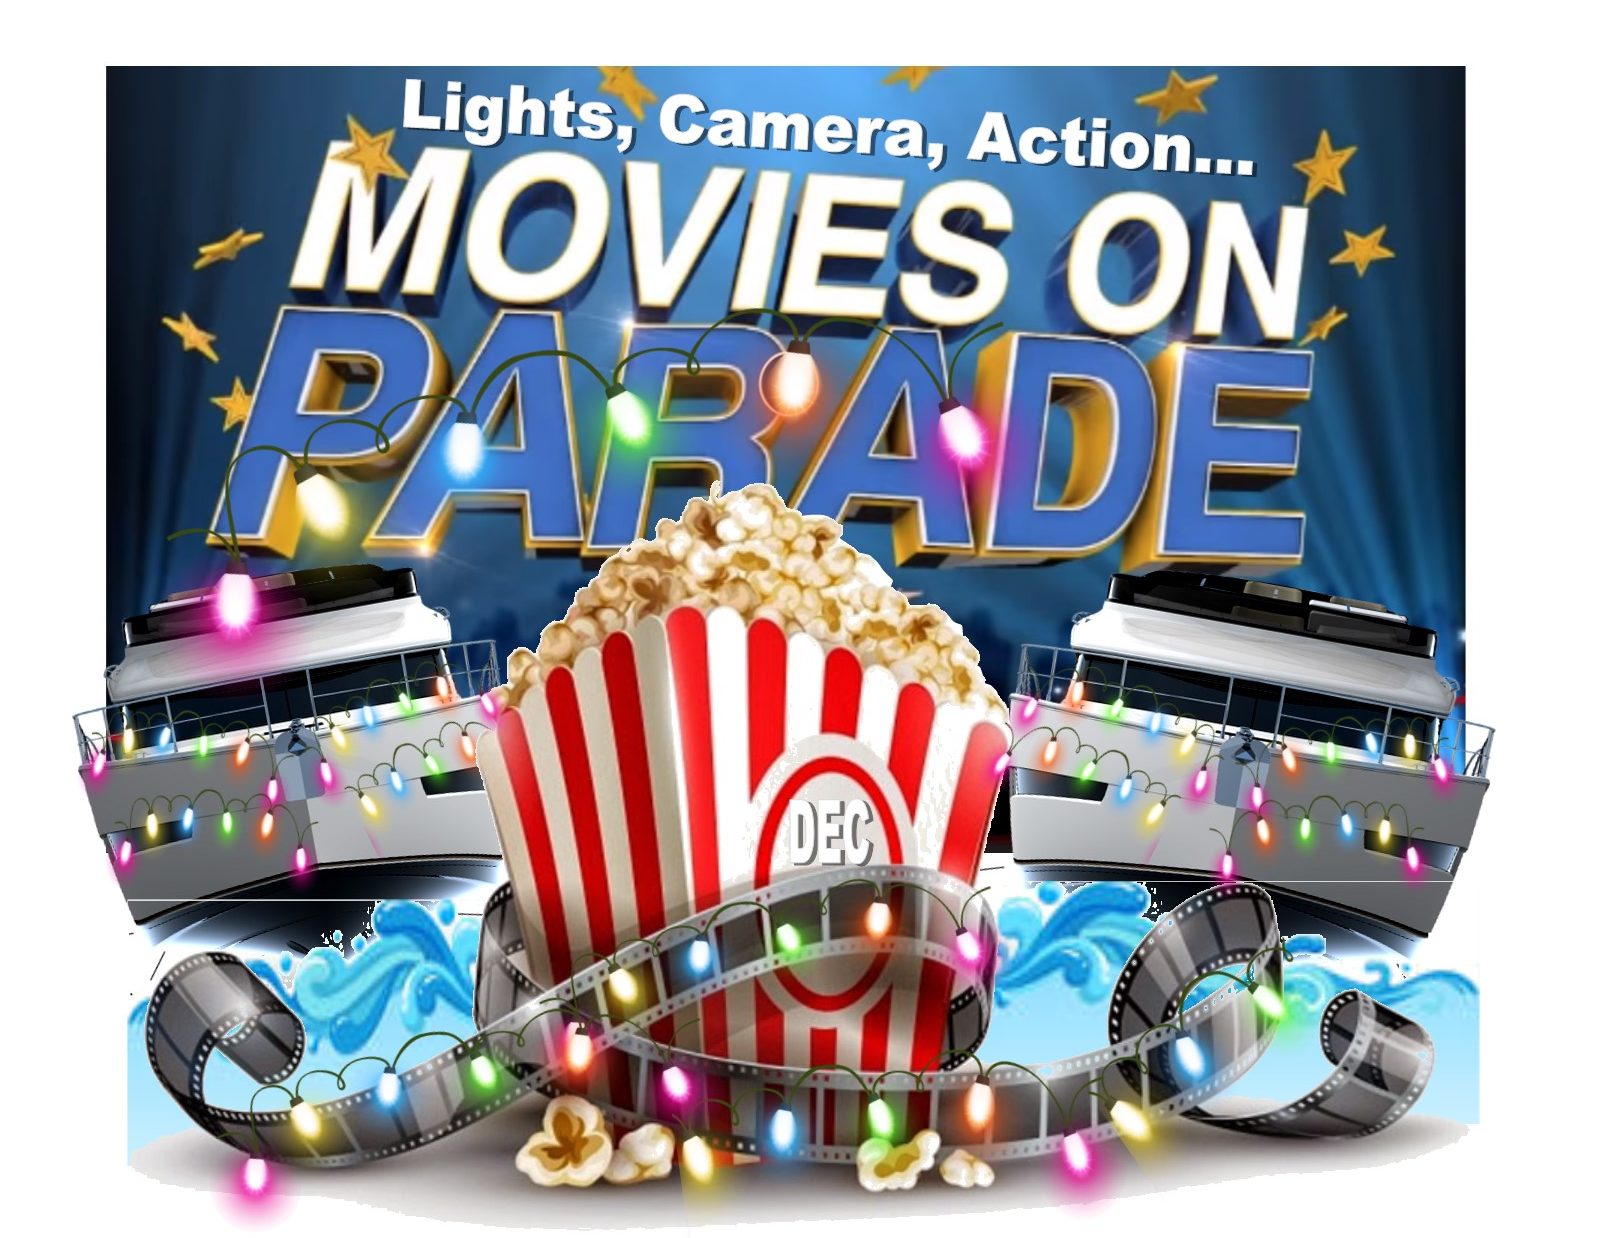 Movies on parade, 2019 theme